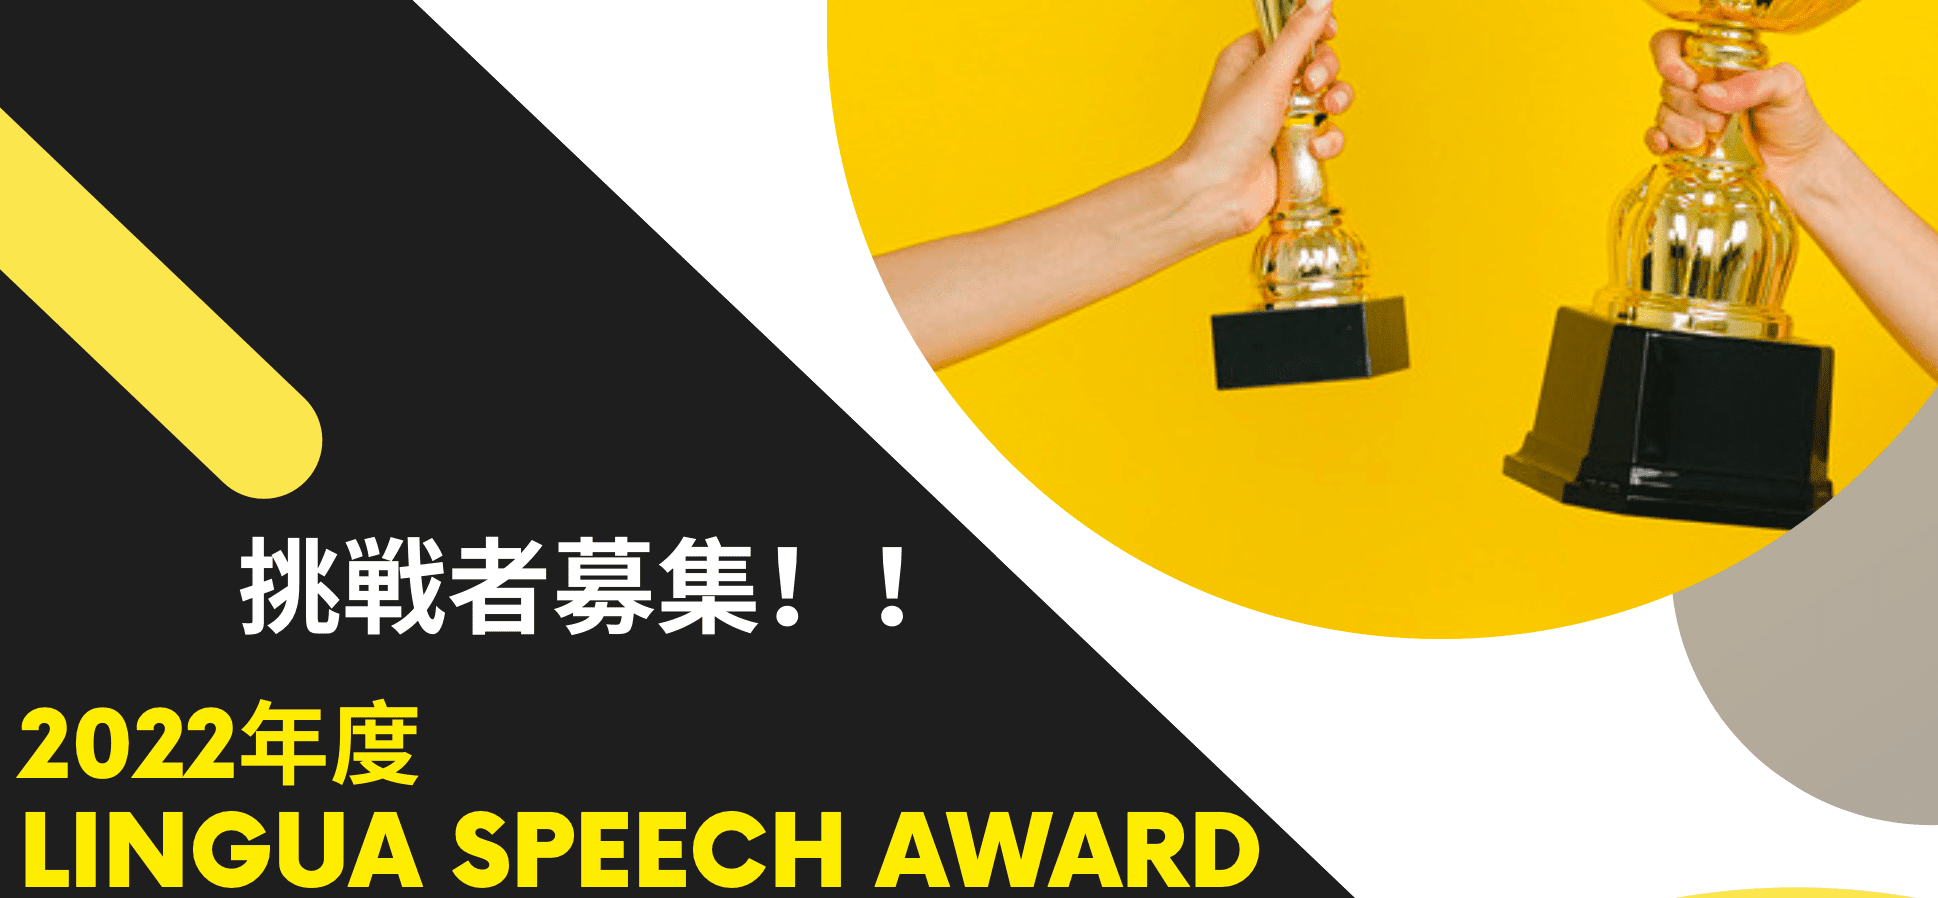 2022年度Lingua Speech Award Presented by LinguaHackers